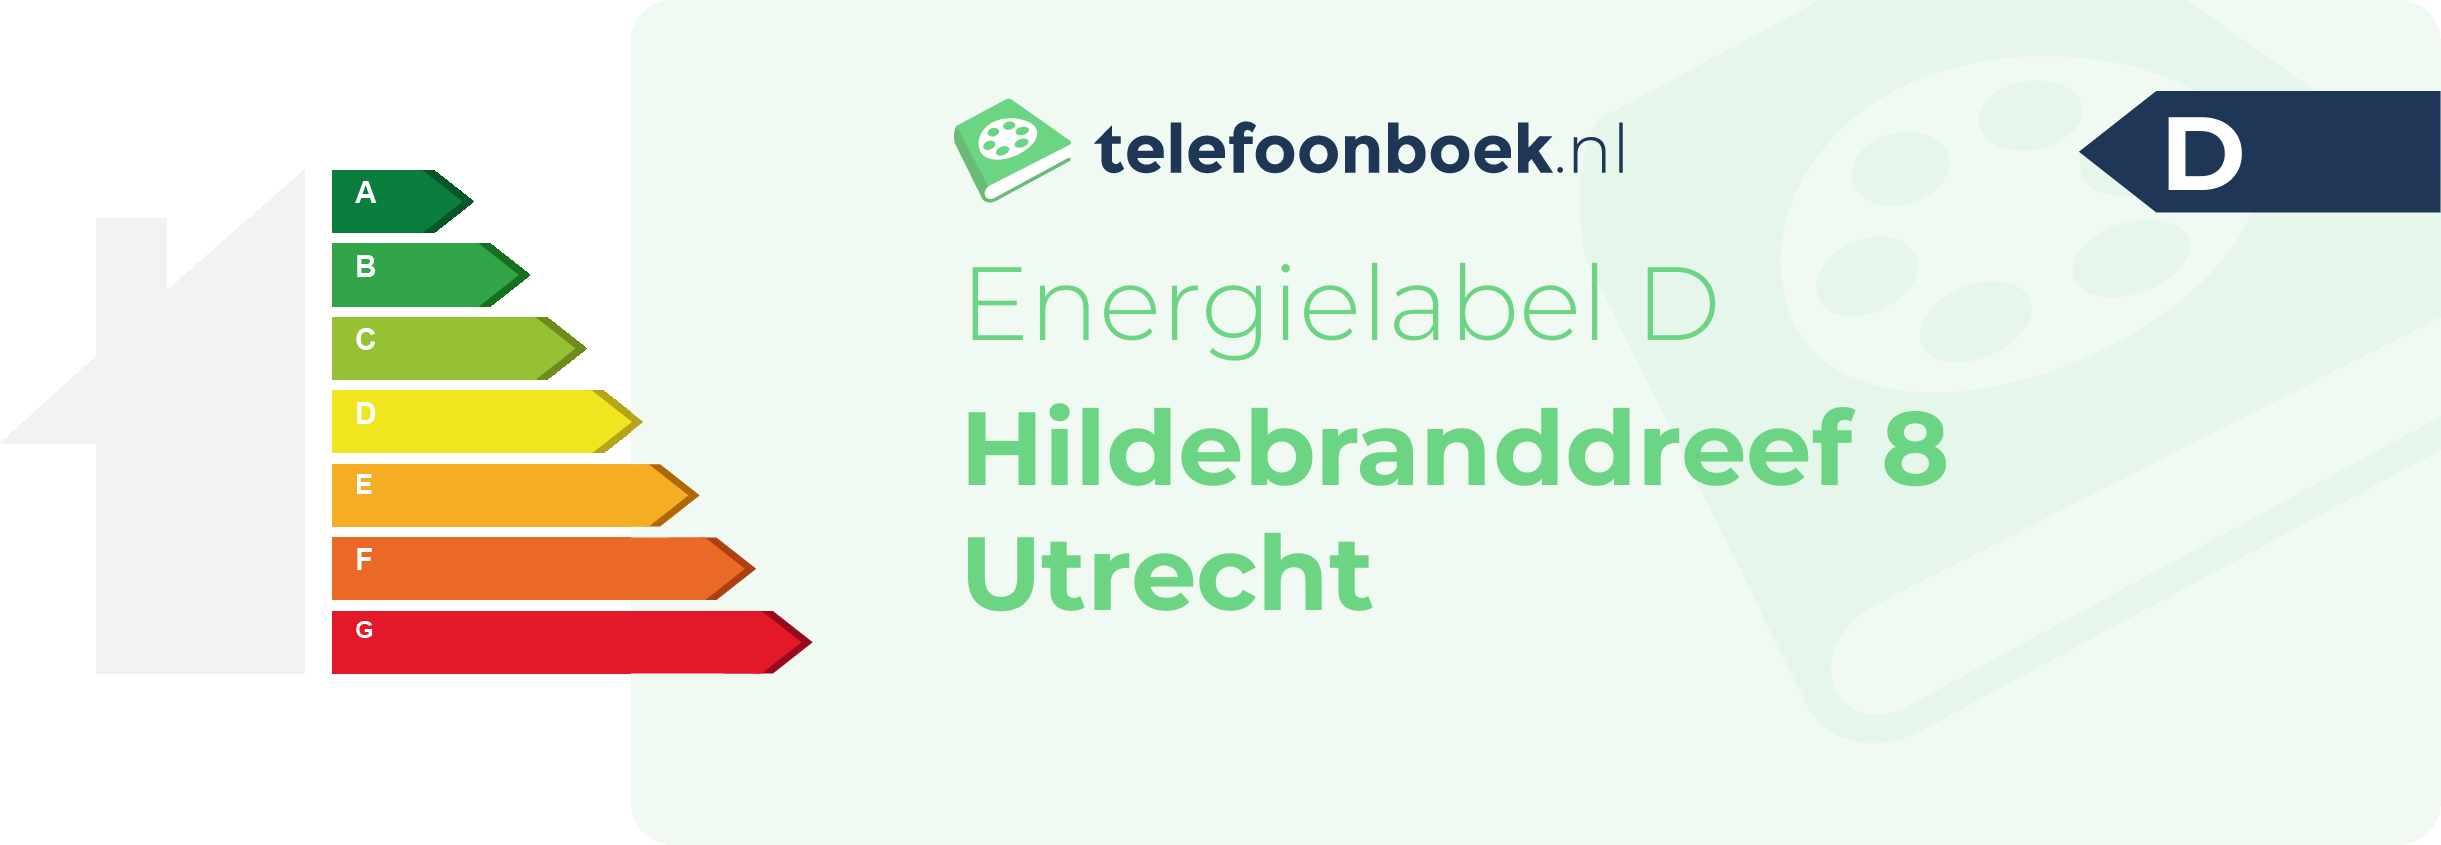 Energielabel Hildebranddreef 8 Utrecht